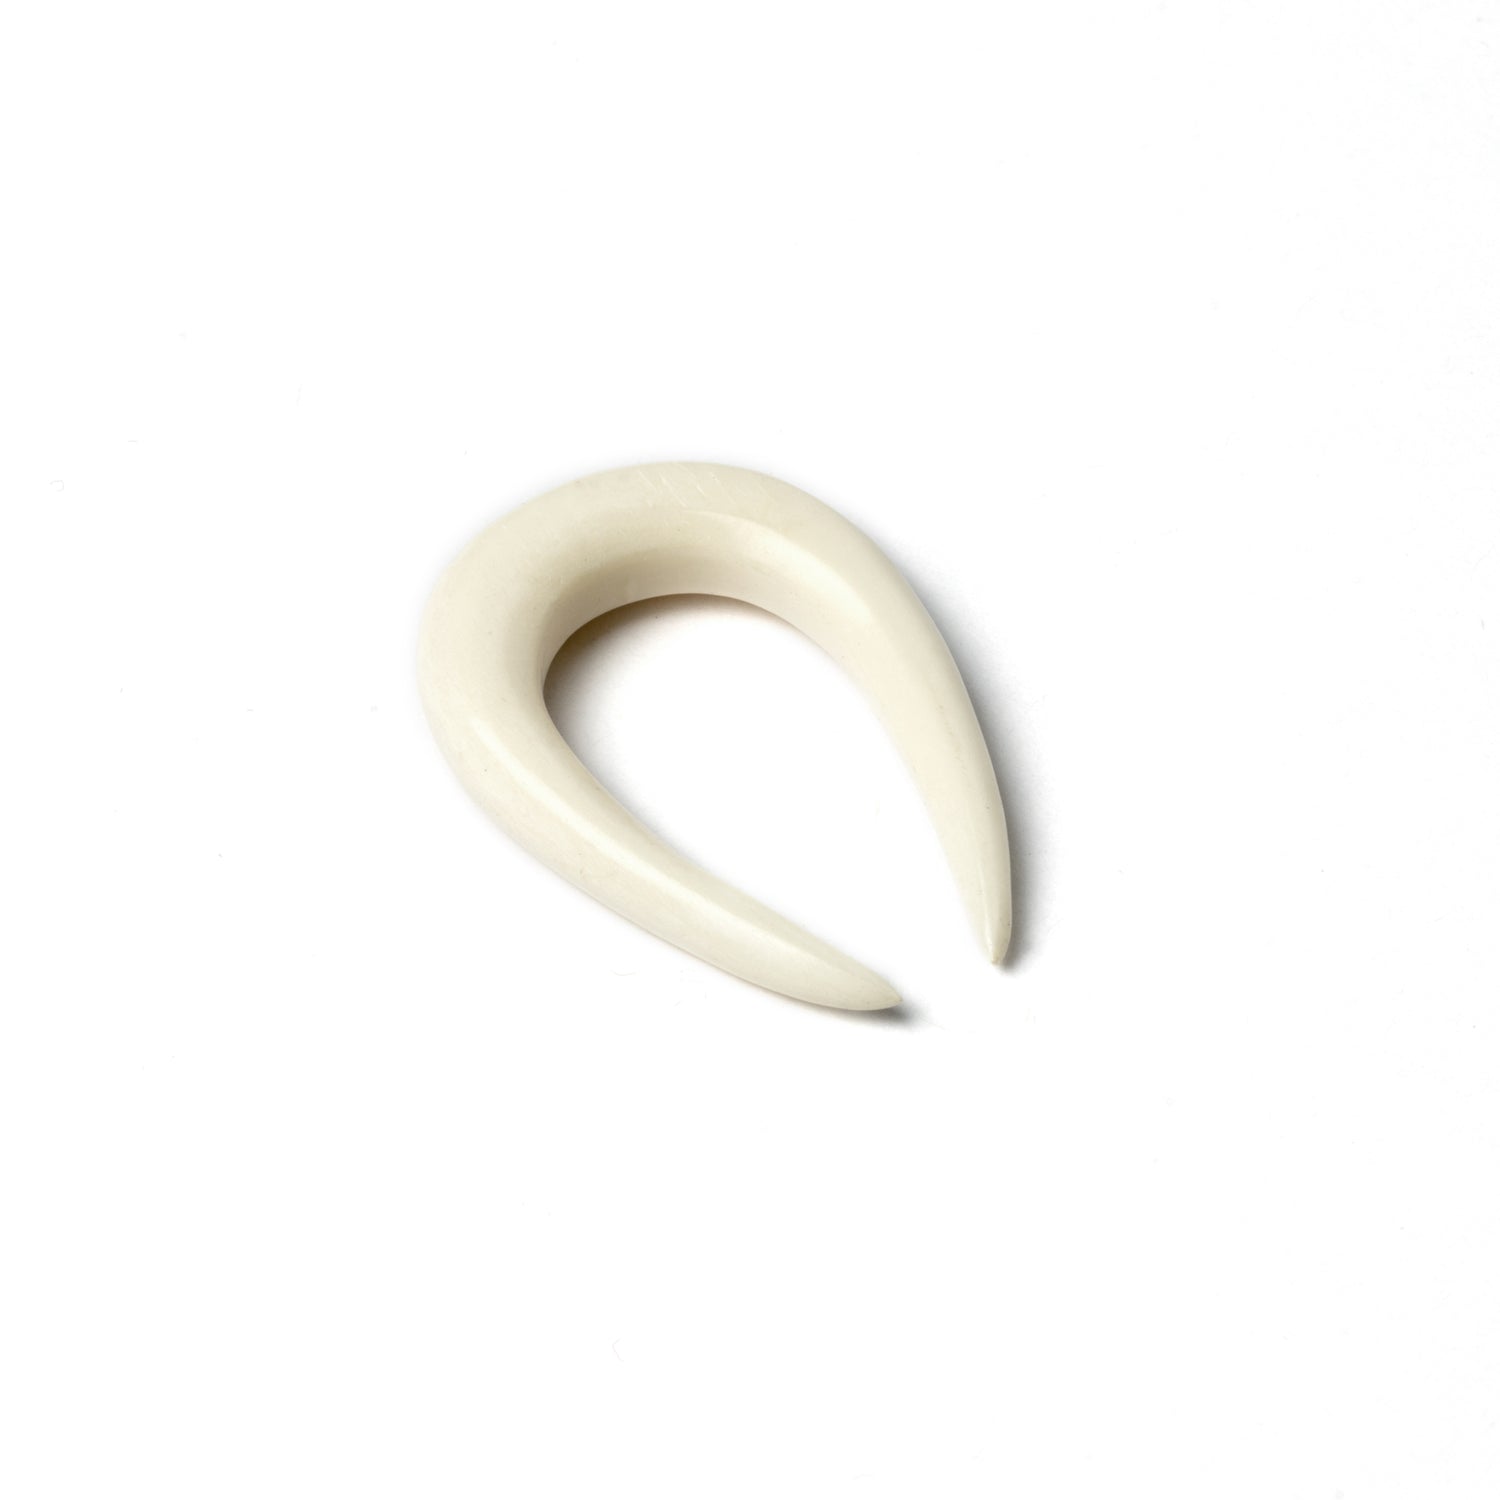 Horseshoe Ear Stretchers - Bone 